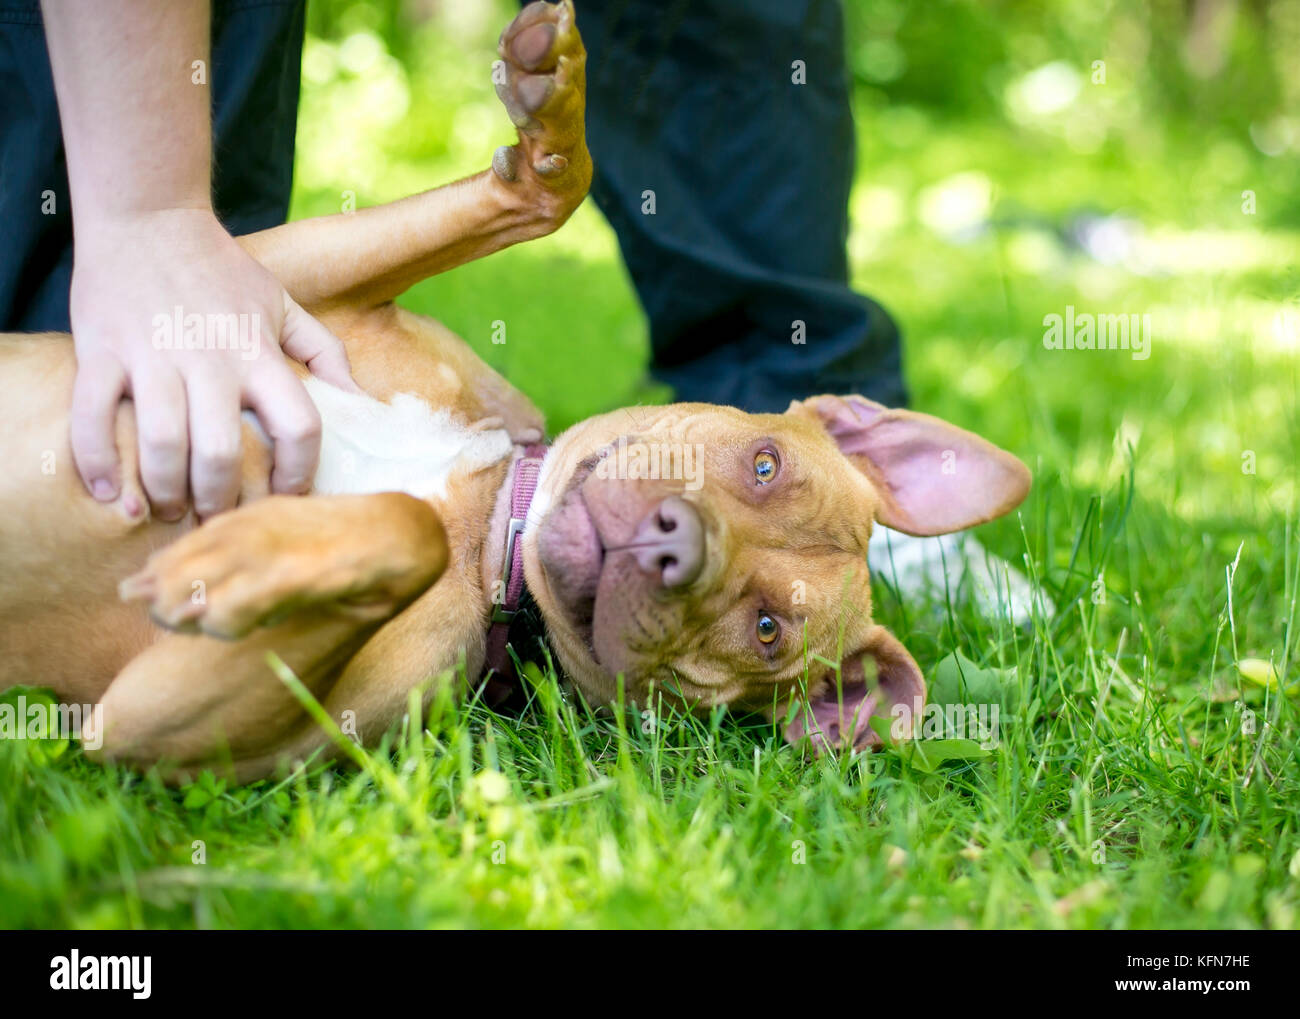 Eine Grube Stier Terrier Mischling Hund im Gras liegend mit einem Bauch  reiben Stockfotografie - Alamy